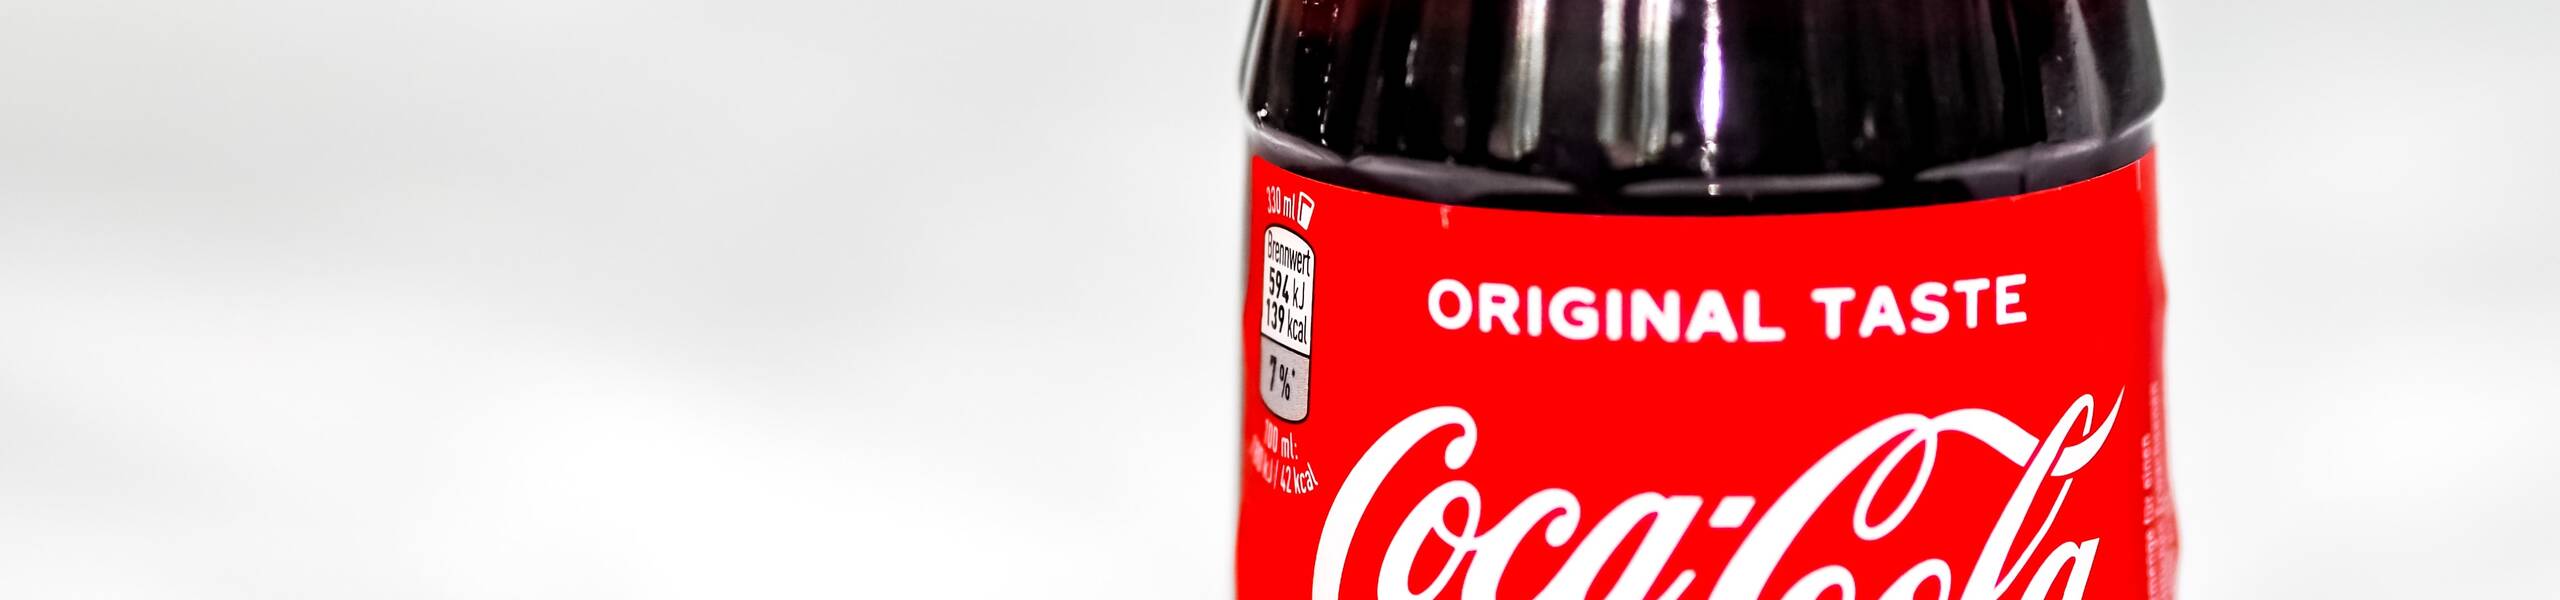 कोका कोला: अपने ऑल टाइम उच्च स्तरों पर वापस जा रहा है